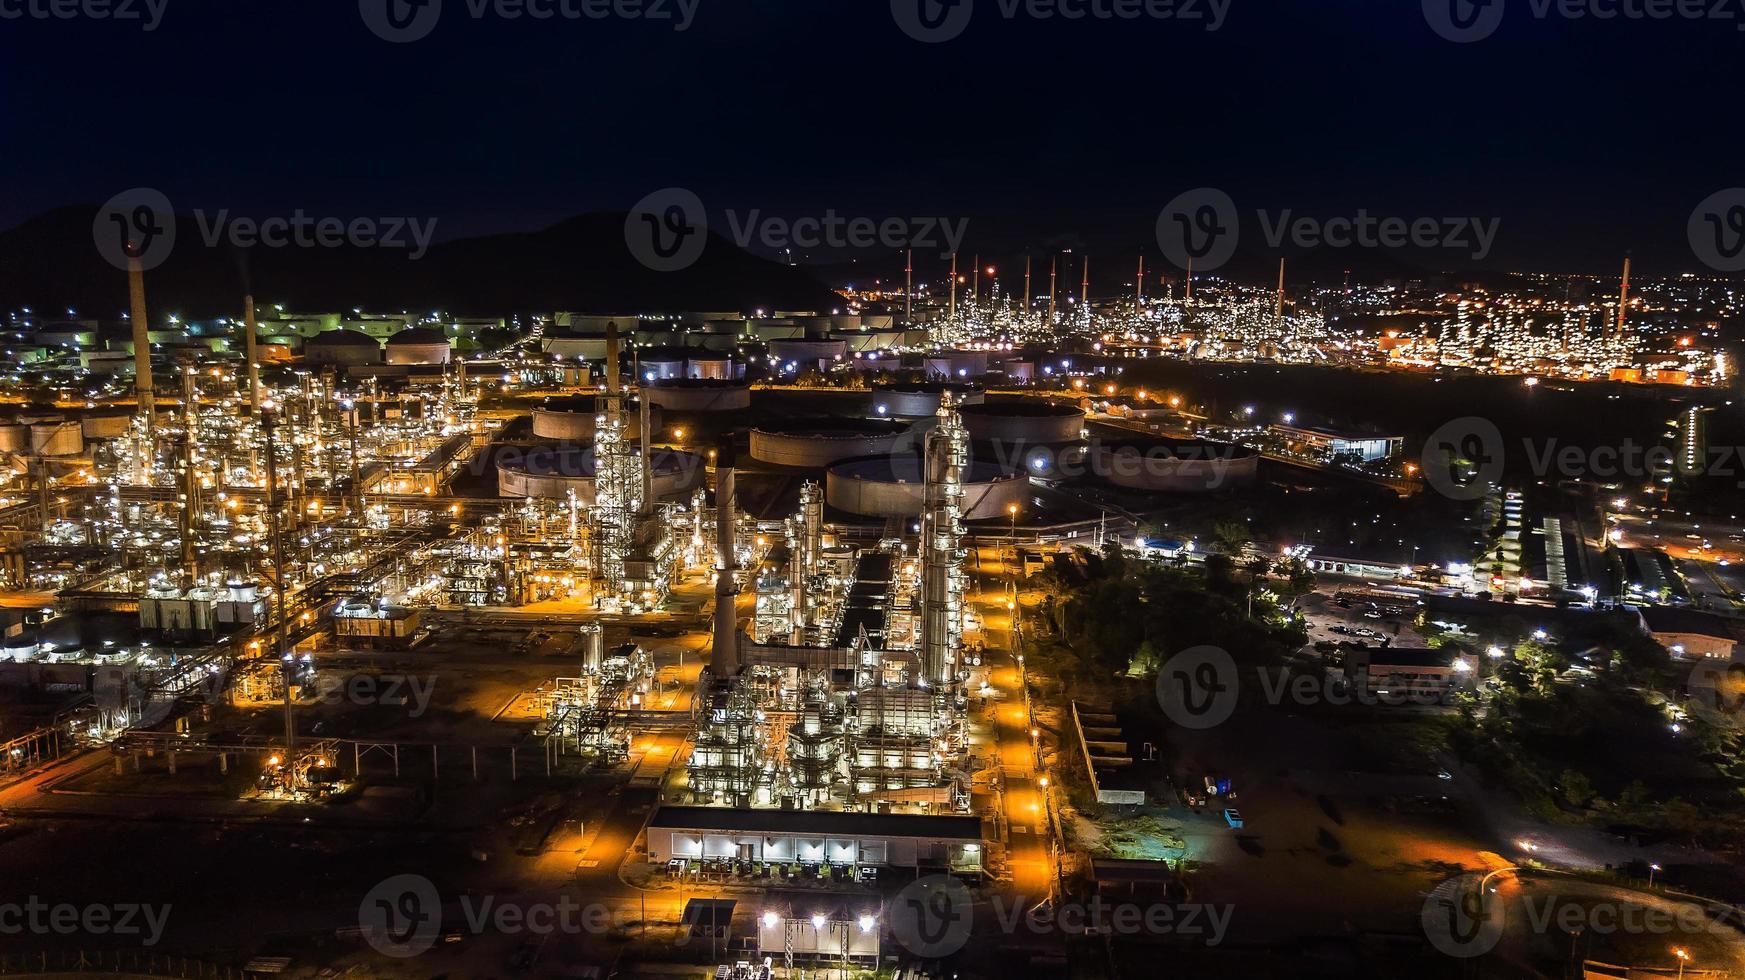 industrie de la raffinerie de pétrole la nuit photo